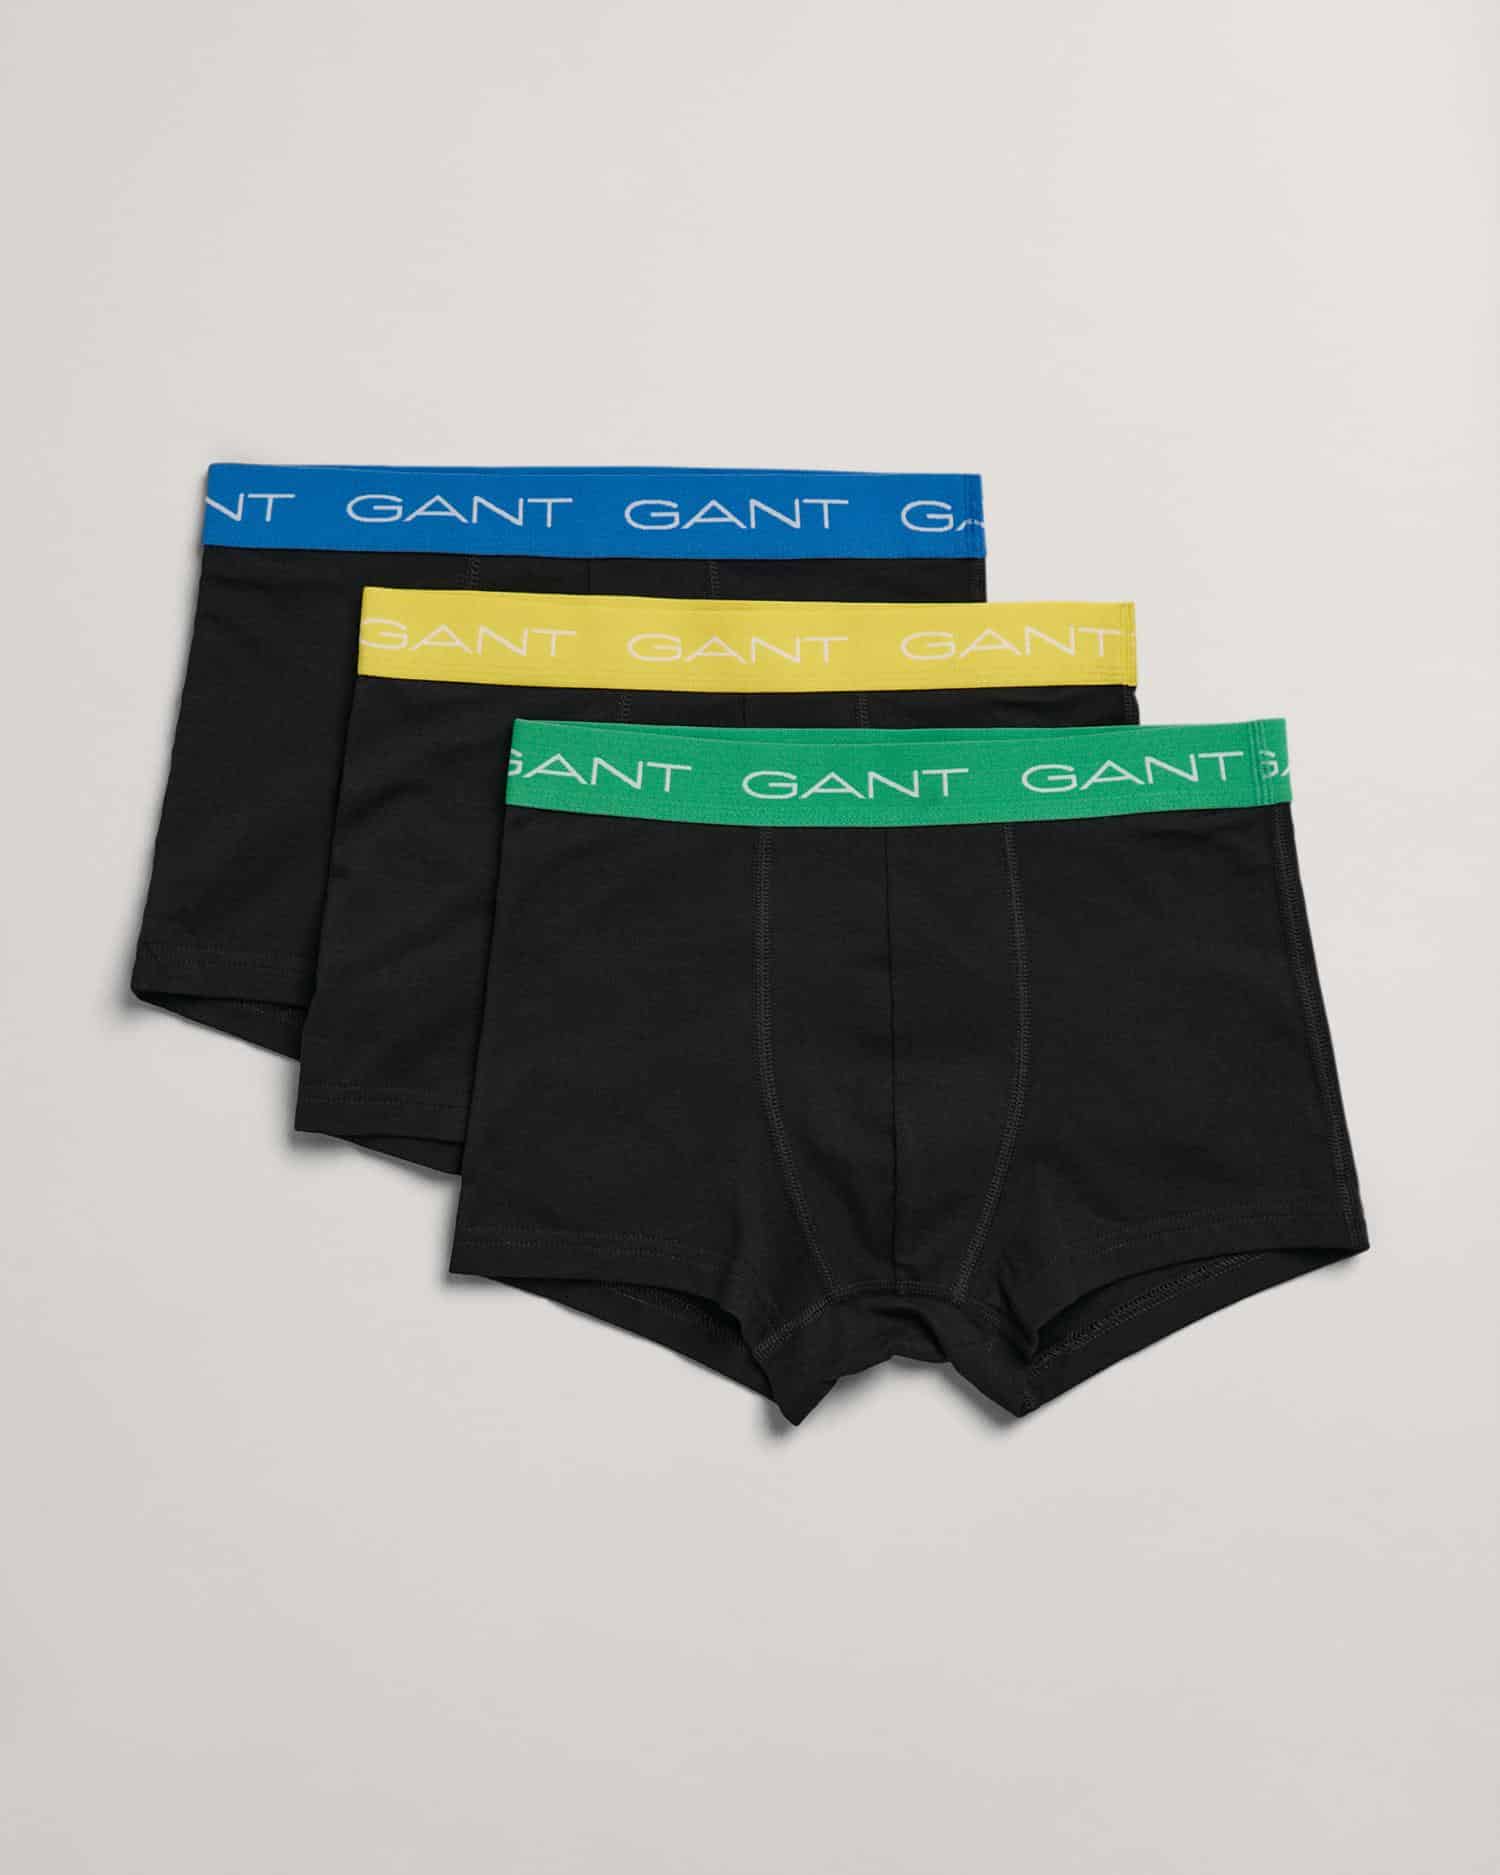 Gant Boys 3 Pack Trunks - Kids Life Clothing - Children's designer clothing